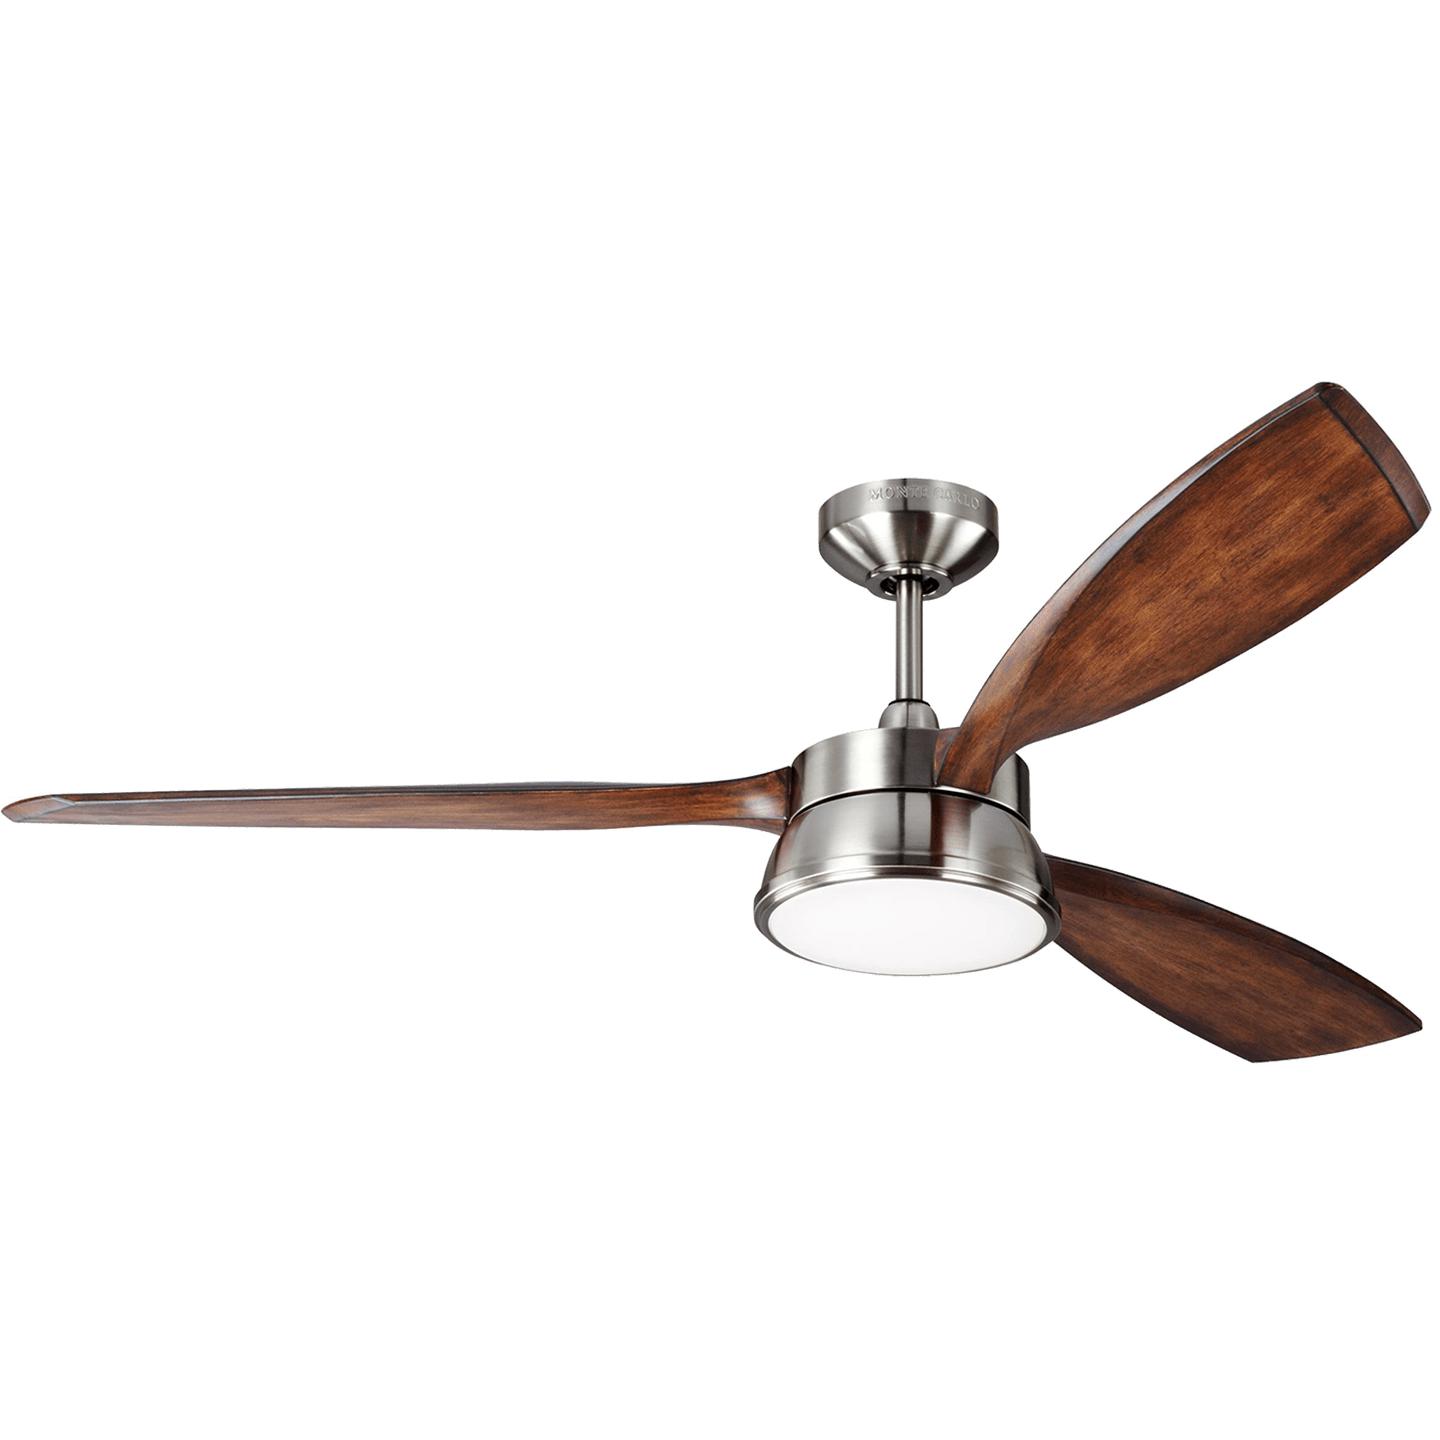 Купить Потолочный вентилятор Destin 57" LED Ceiling Fan в интернет-магазине roooms.ru